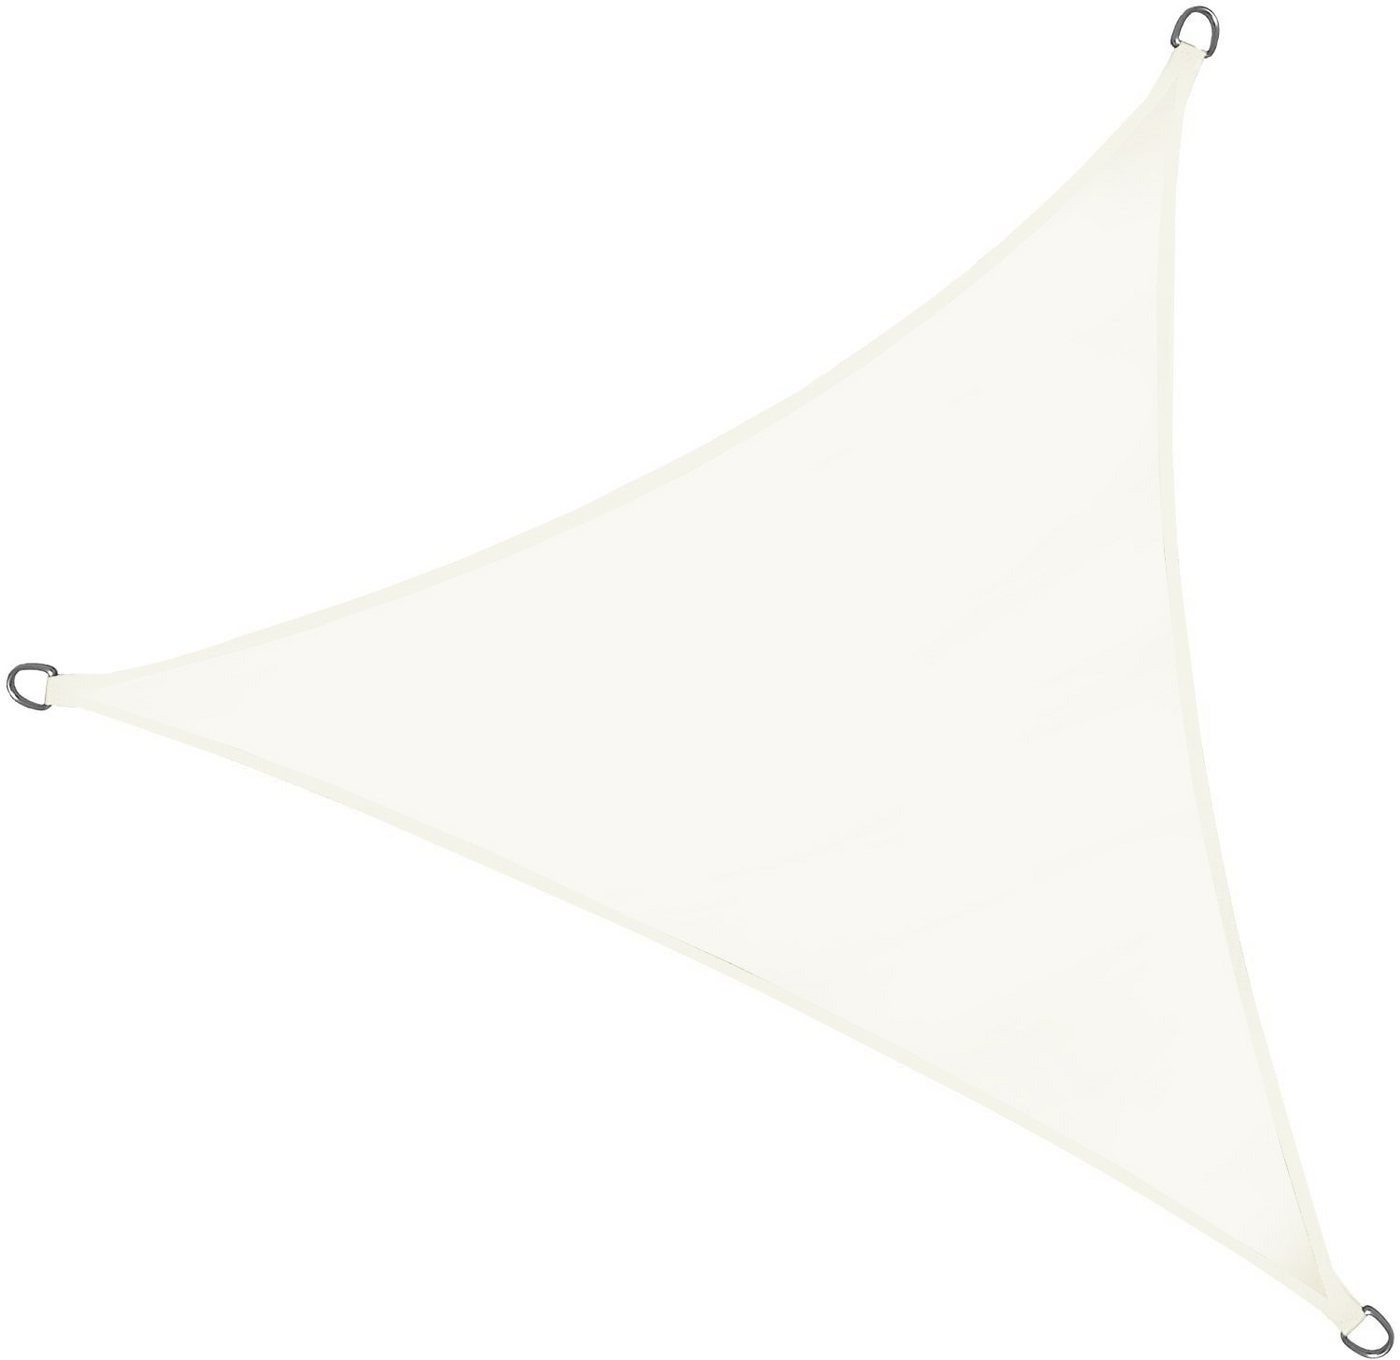 osoltus Seilspannsonnensegel Sonnensegel 3,6m x 3,6m x 3,6m elfenbein/weiß dreiceckig Samos von osoltus